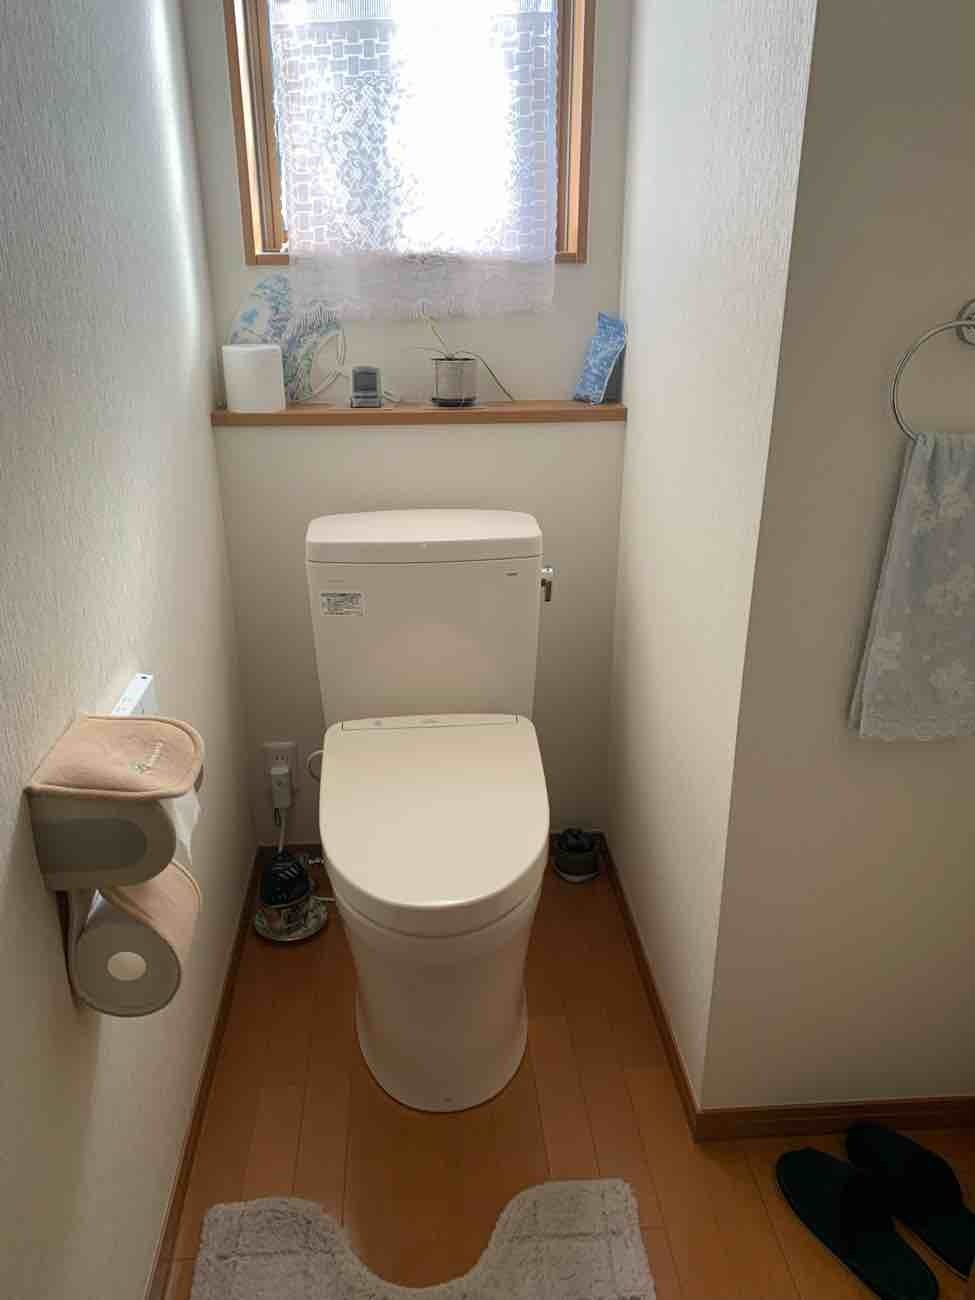 【埼玉県吉川市】T様邸トイレ交換工事が完了しました。TOTOピュアレストQR 画像